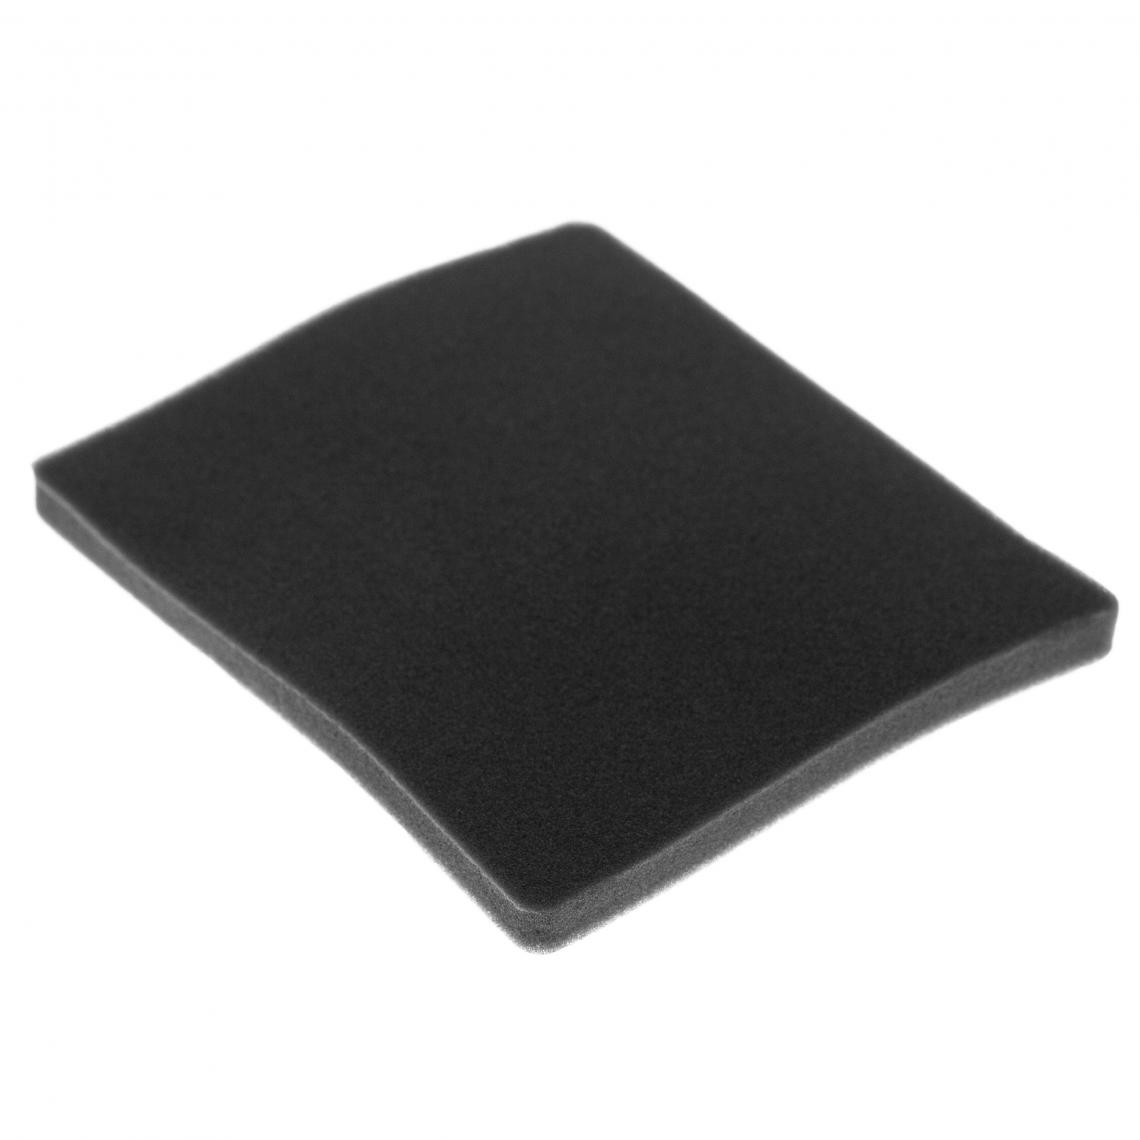 Vhbw - vhbw Filtre compatible avec Electrolux ZCX6410 (910288778) aspirateur - filtre de sortie d'air (filtre éponge), noir - Accessoire entretien des sols